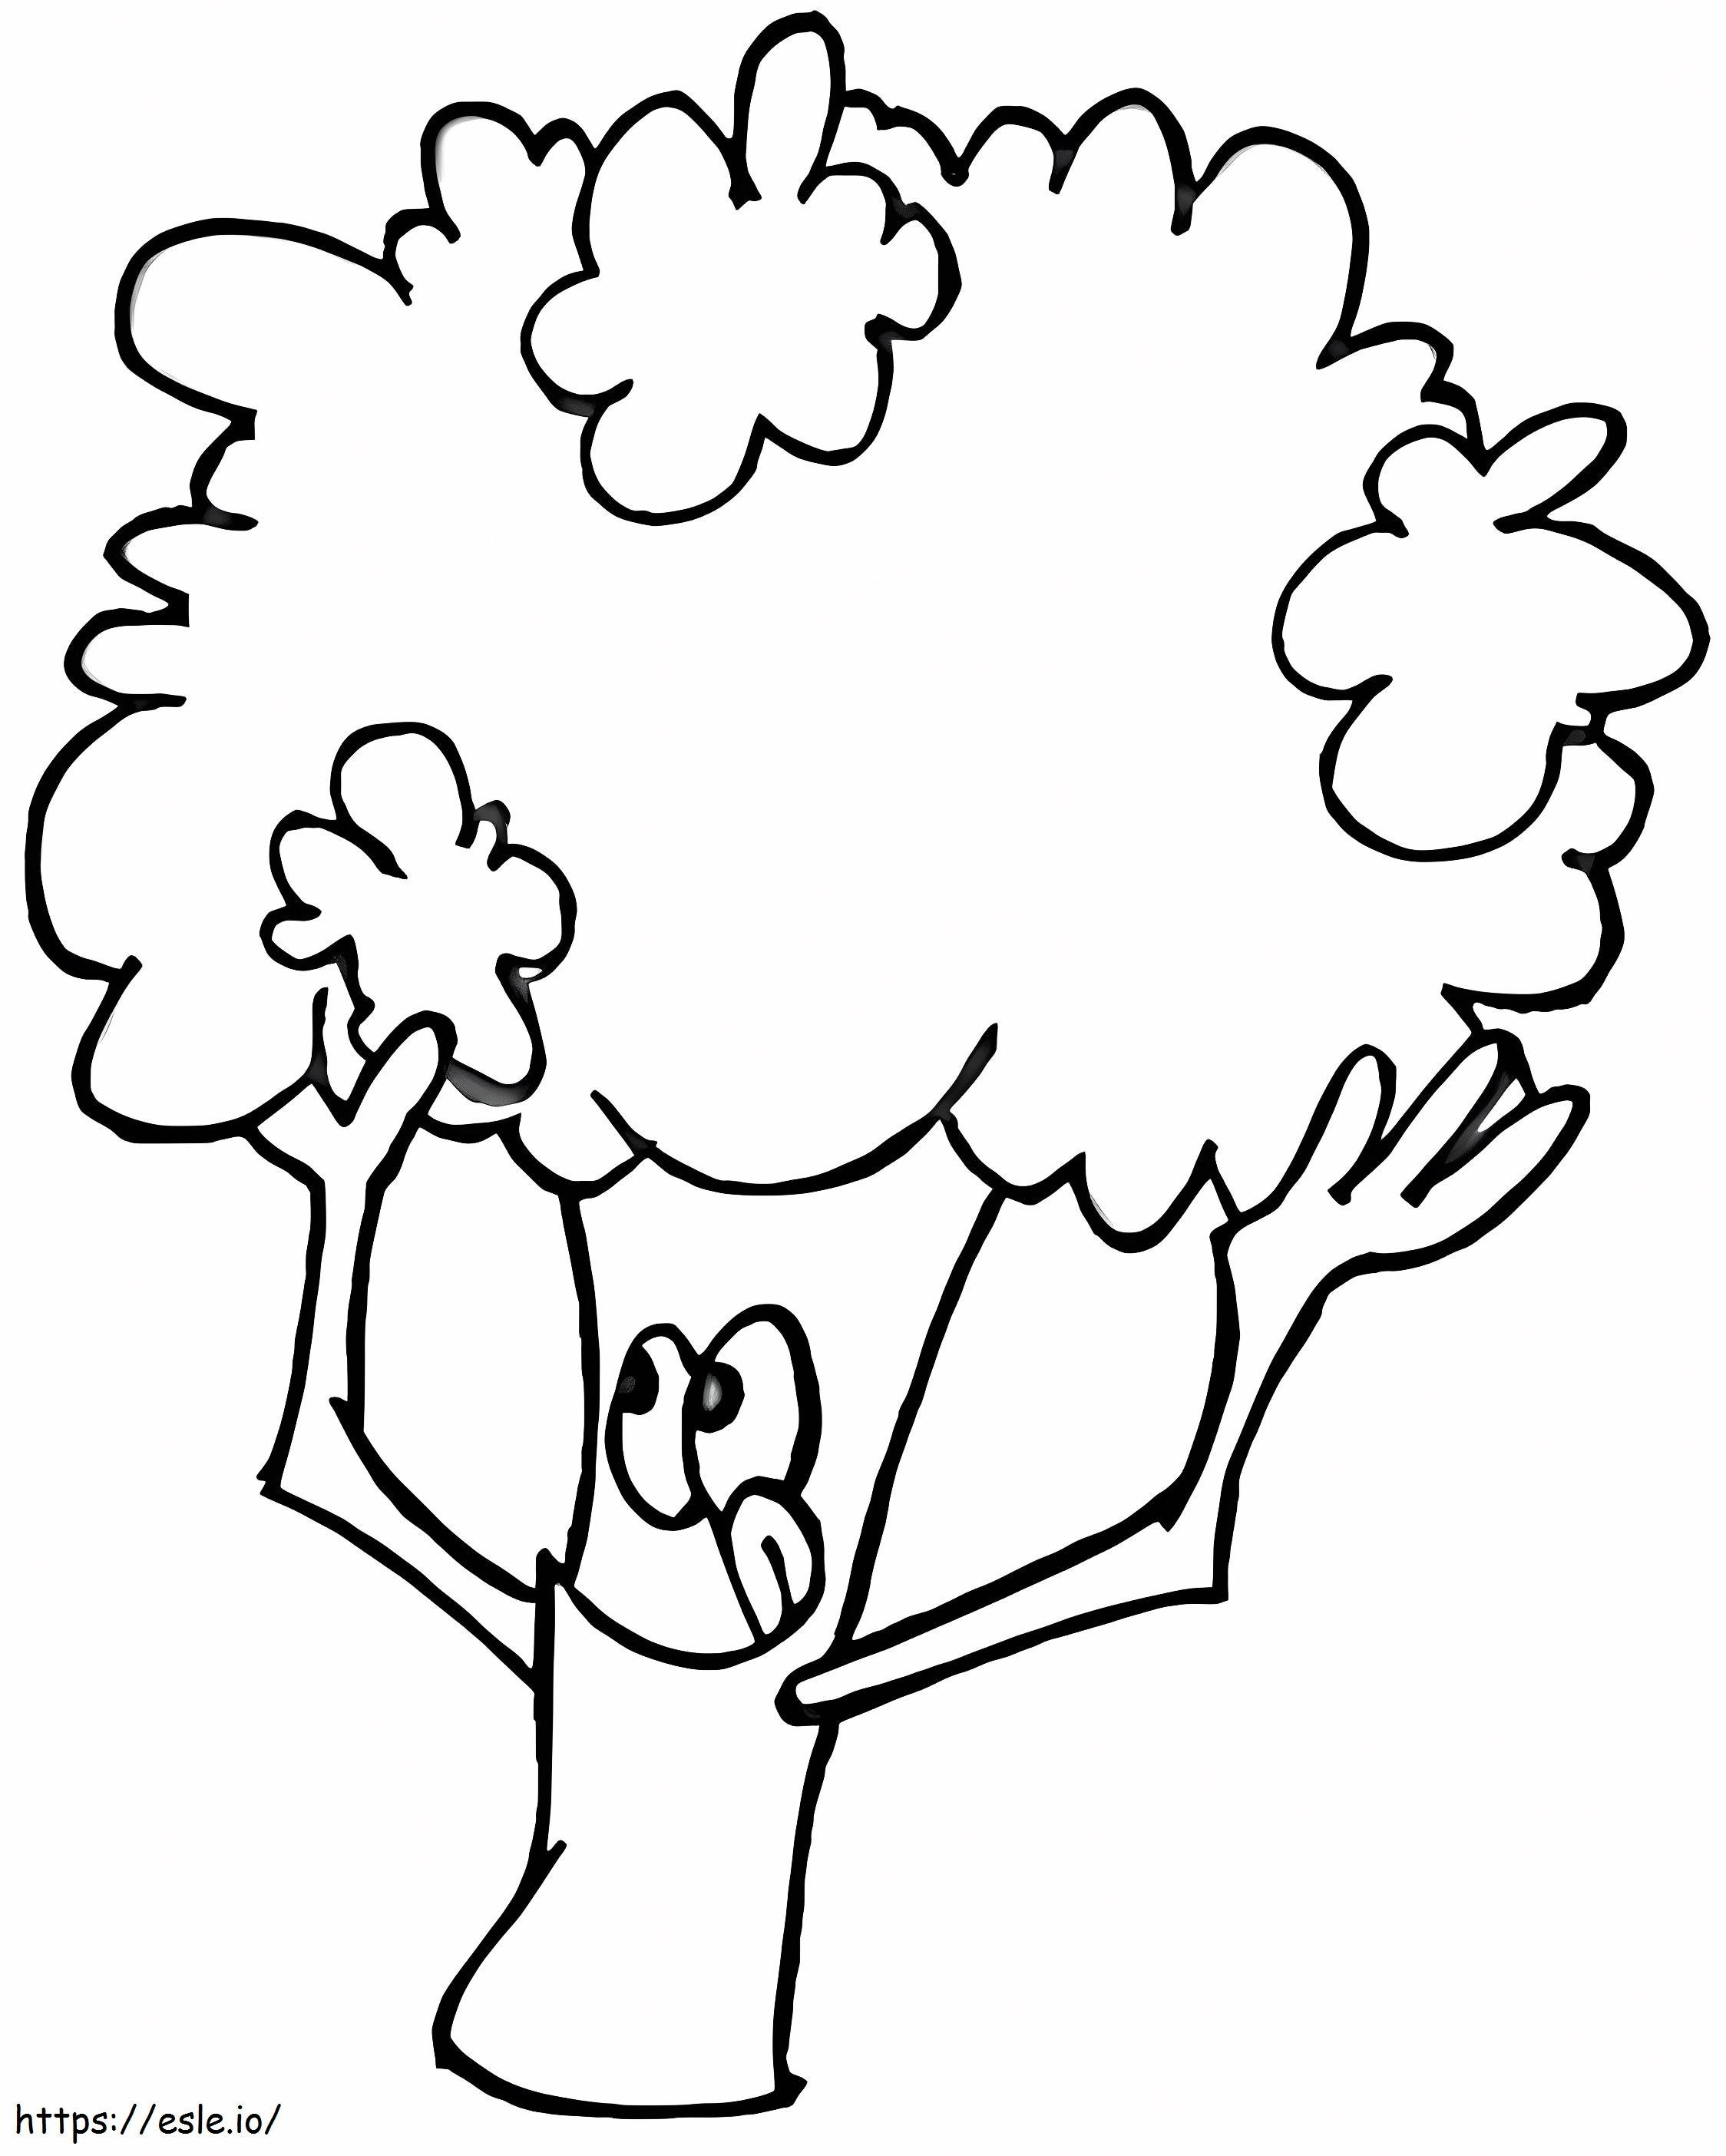 1560243303 Cartoon Broccoli A4 coloring page